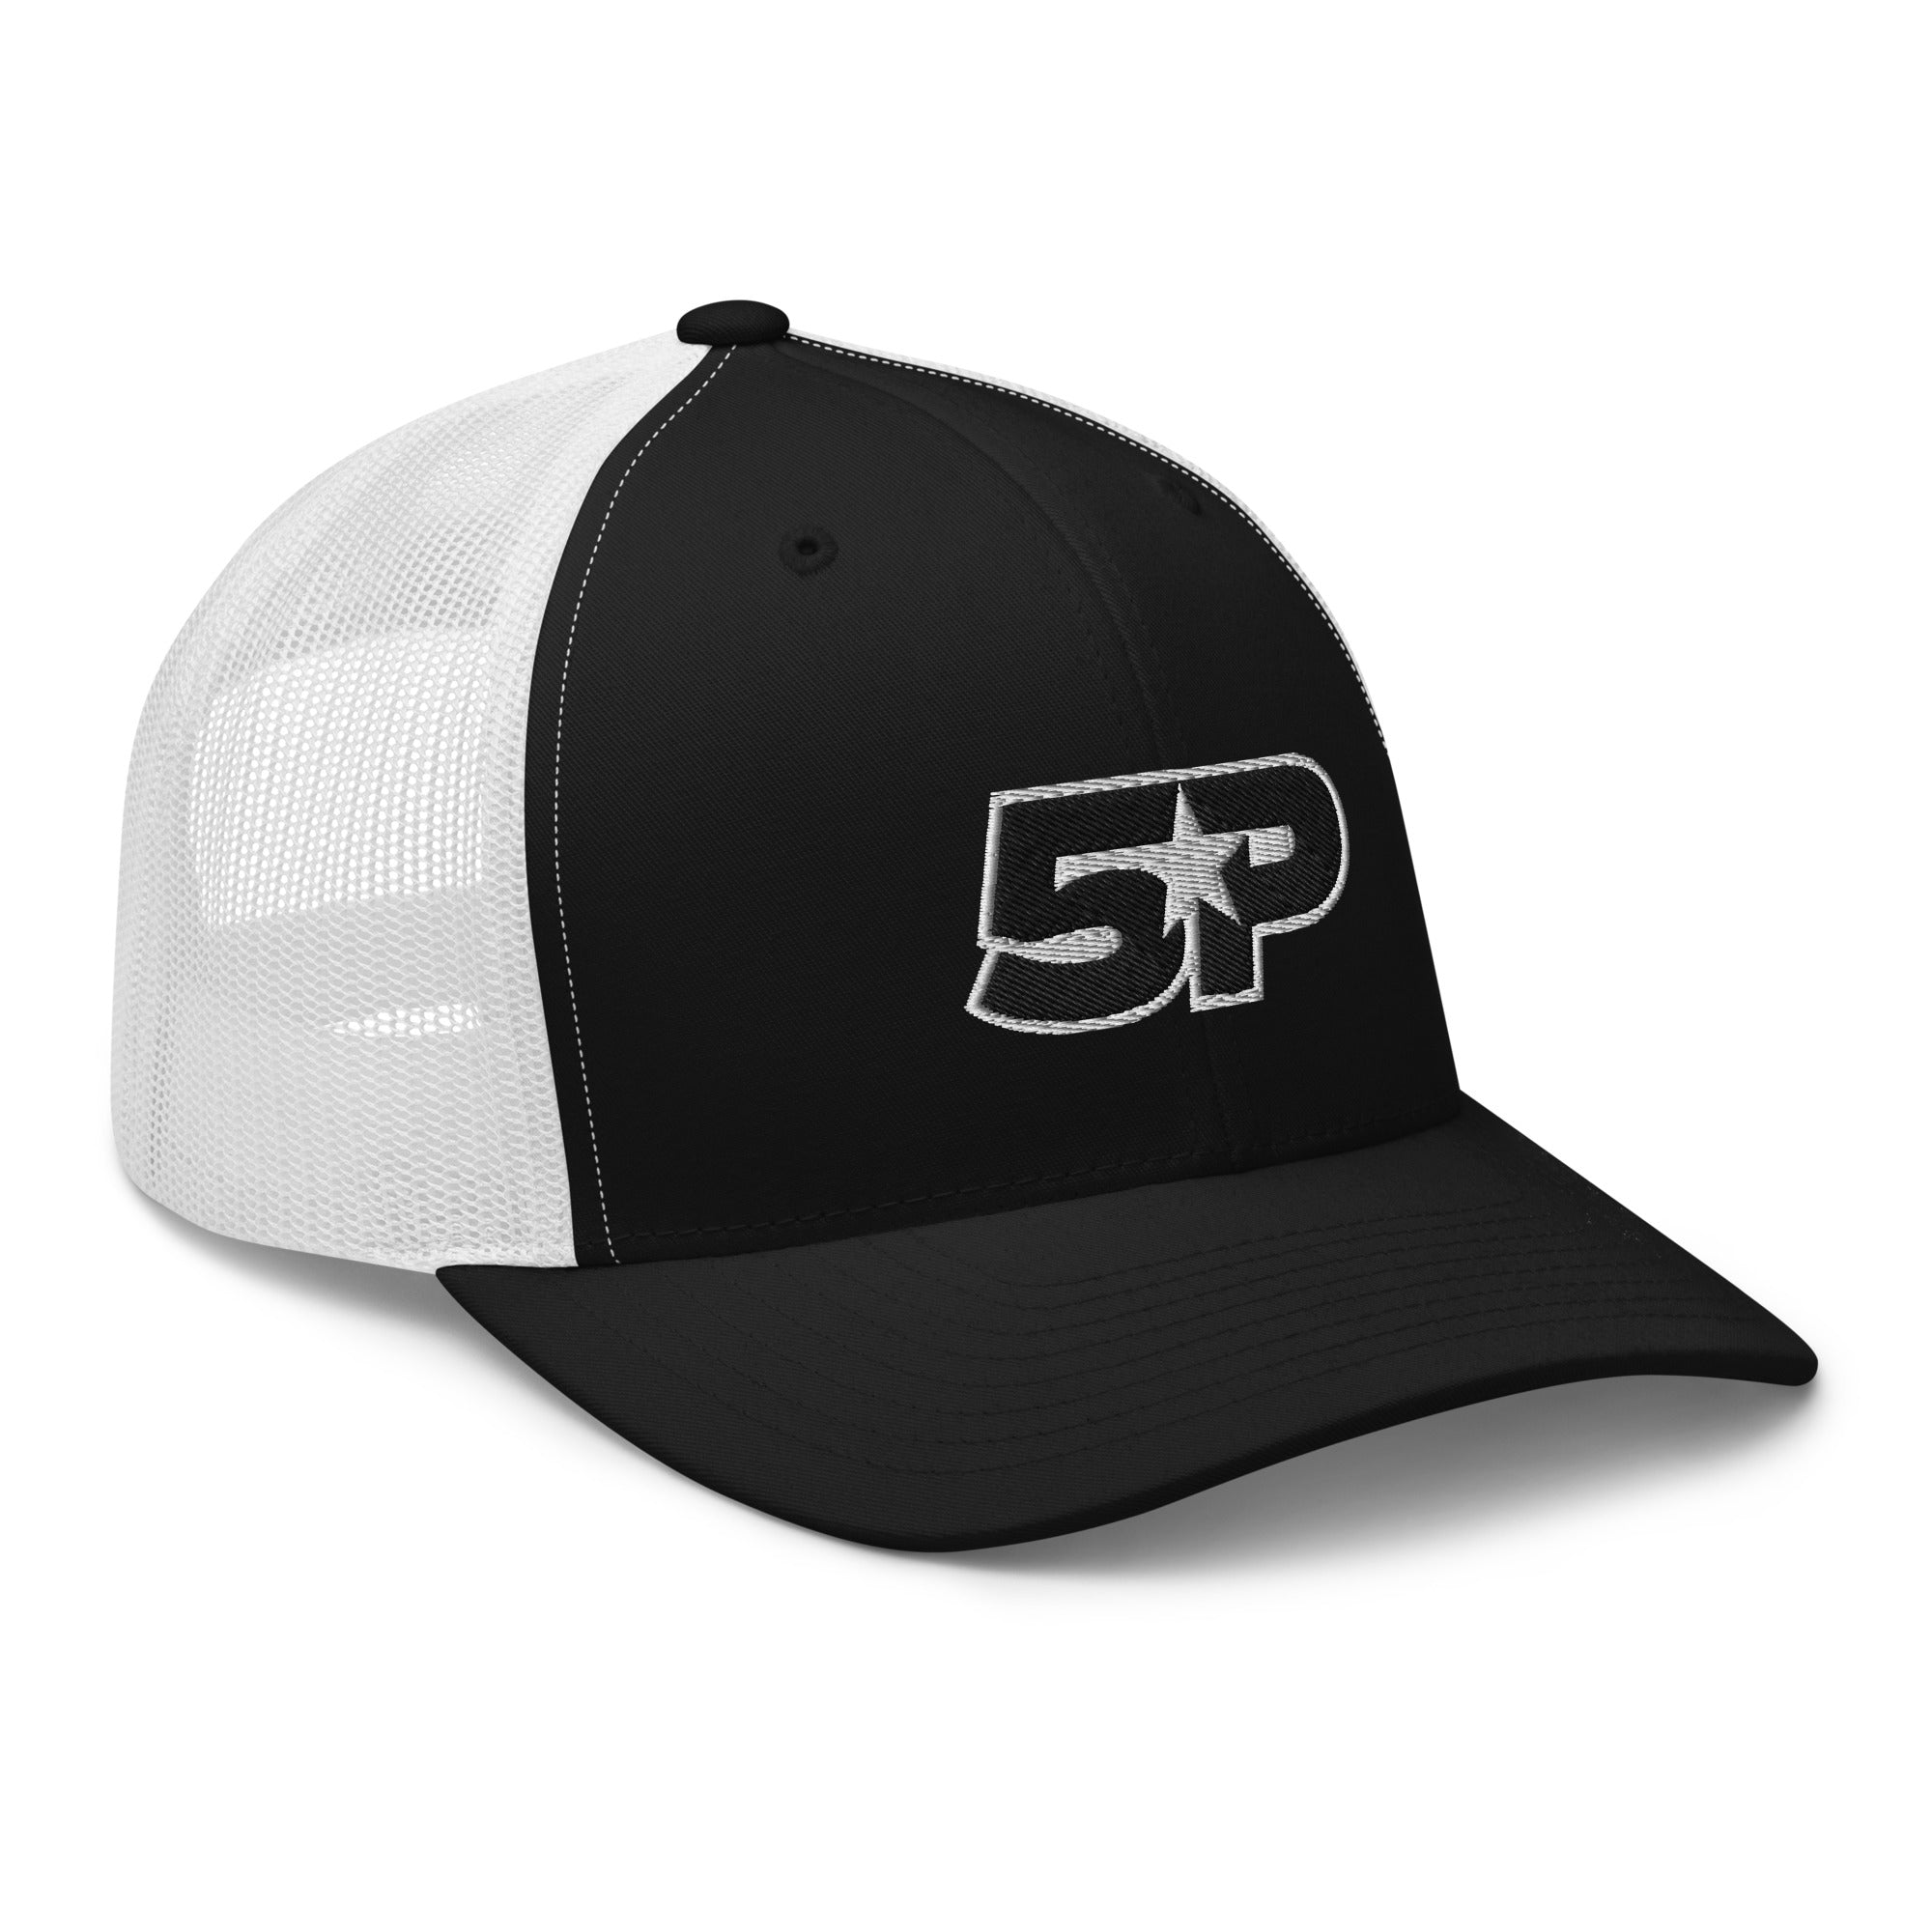 5P Trucker Cap